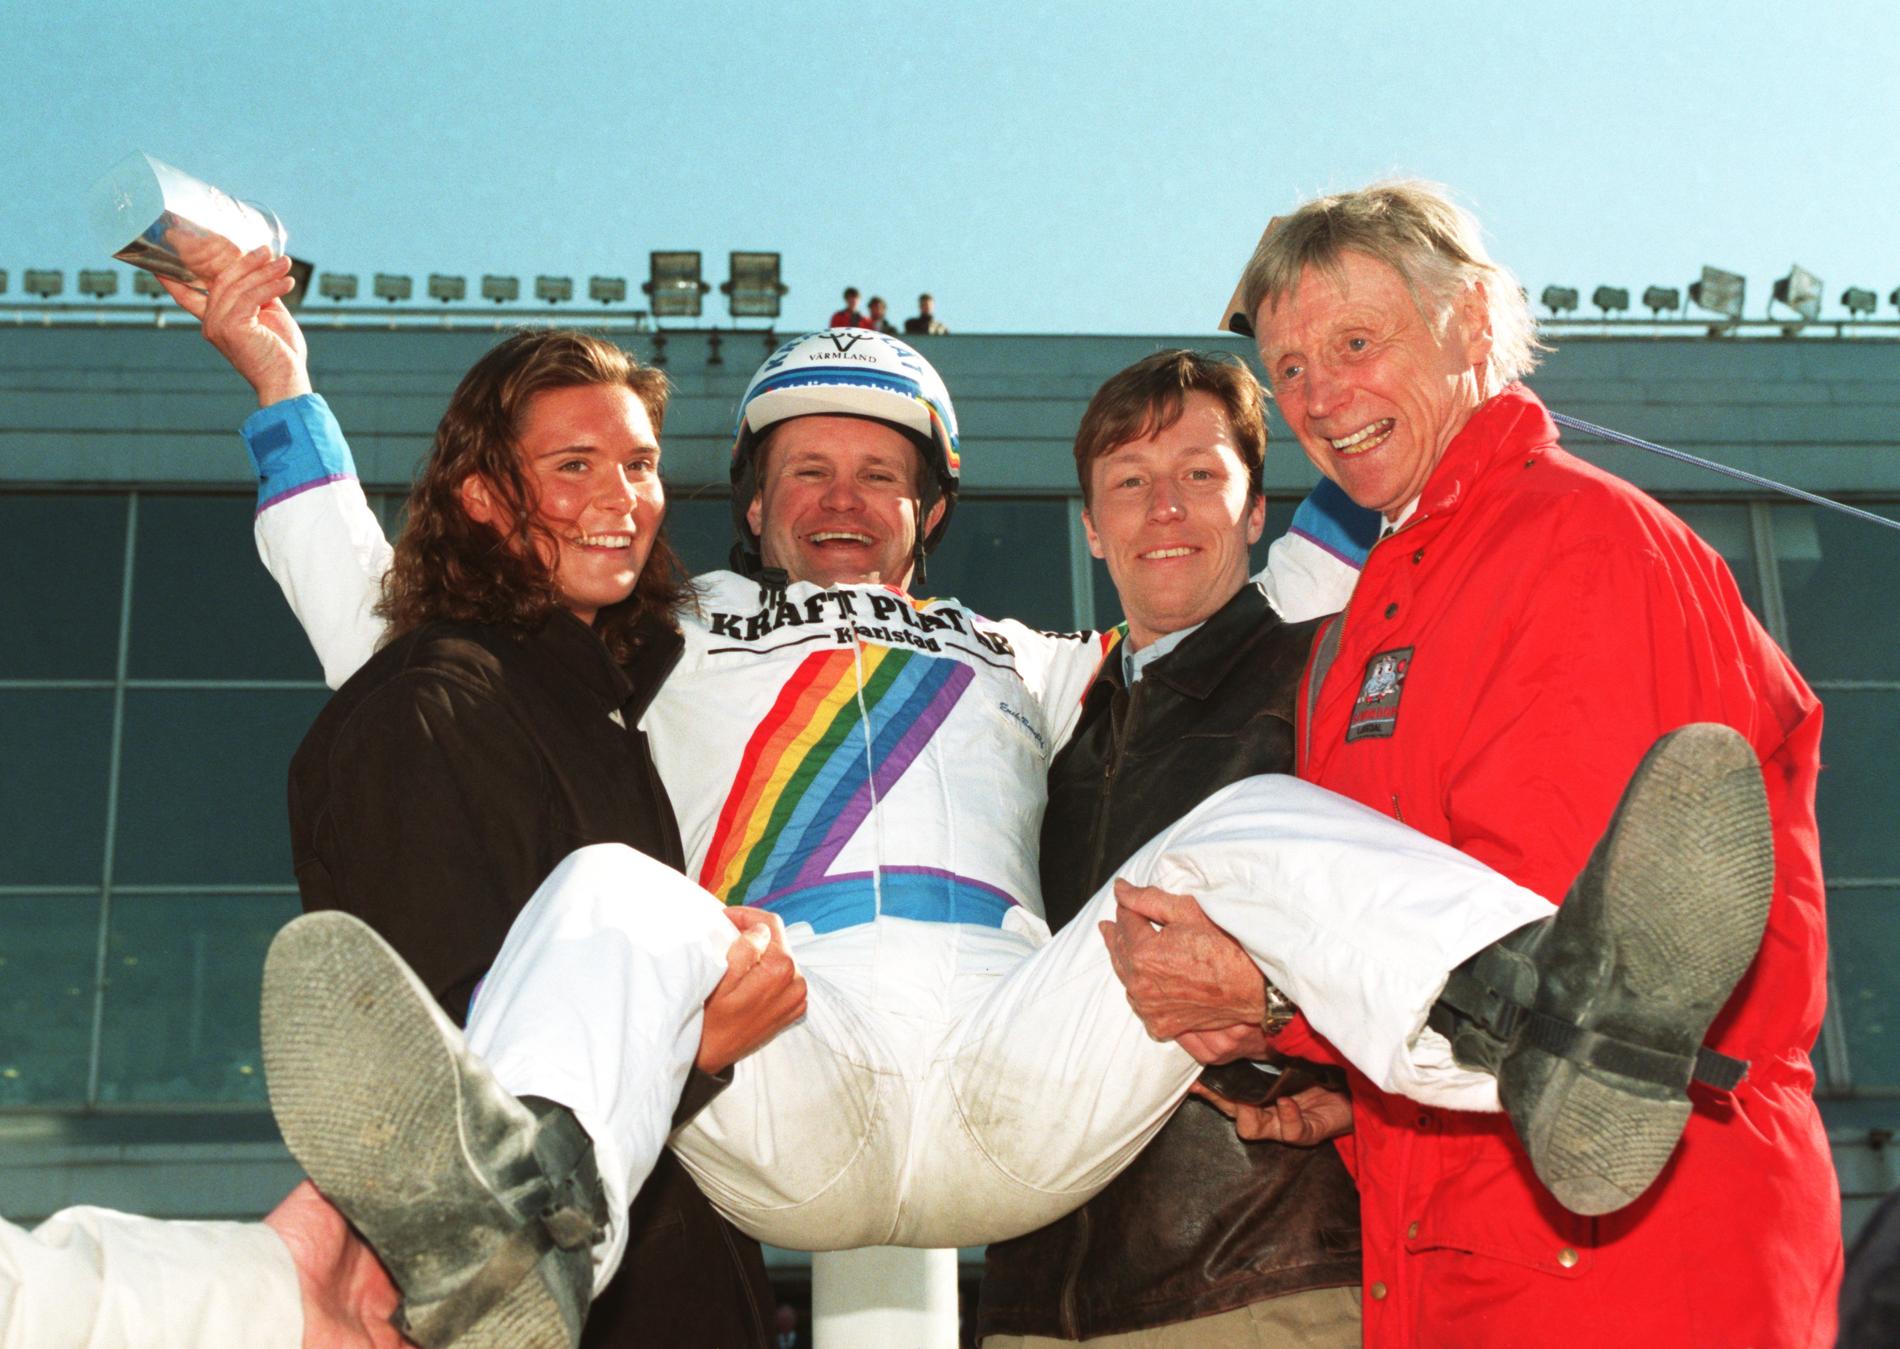 Erik Berglöf hissas av simmerskan Louise Karlsson och bordtennisspelaren Jan-Ove Waldner efter segern i Olympiatravet 1994 med Copiad.